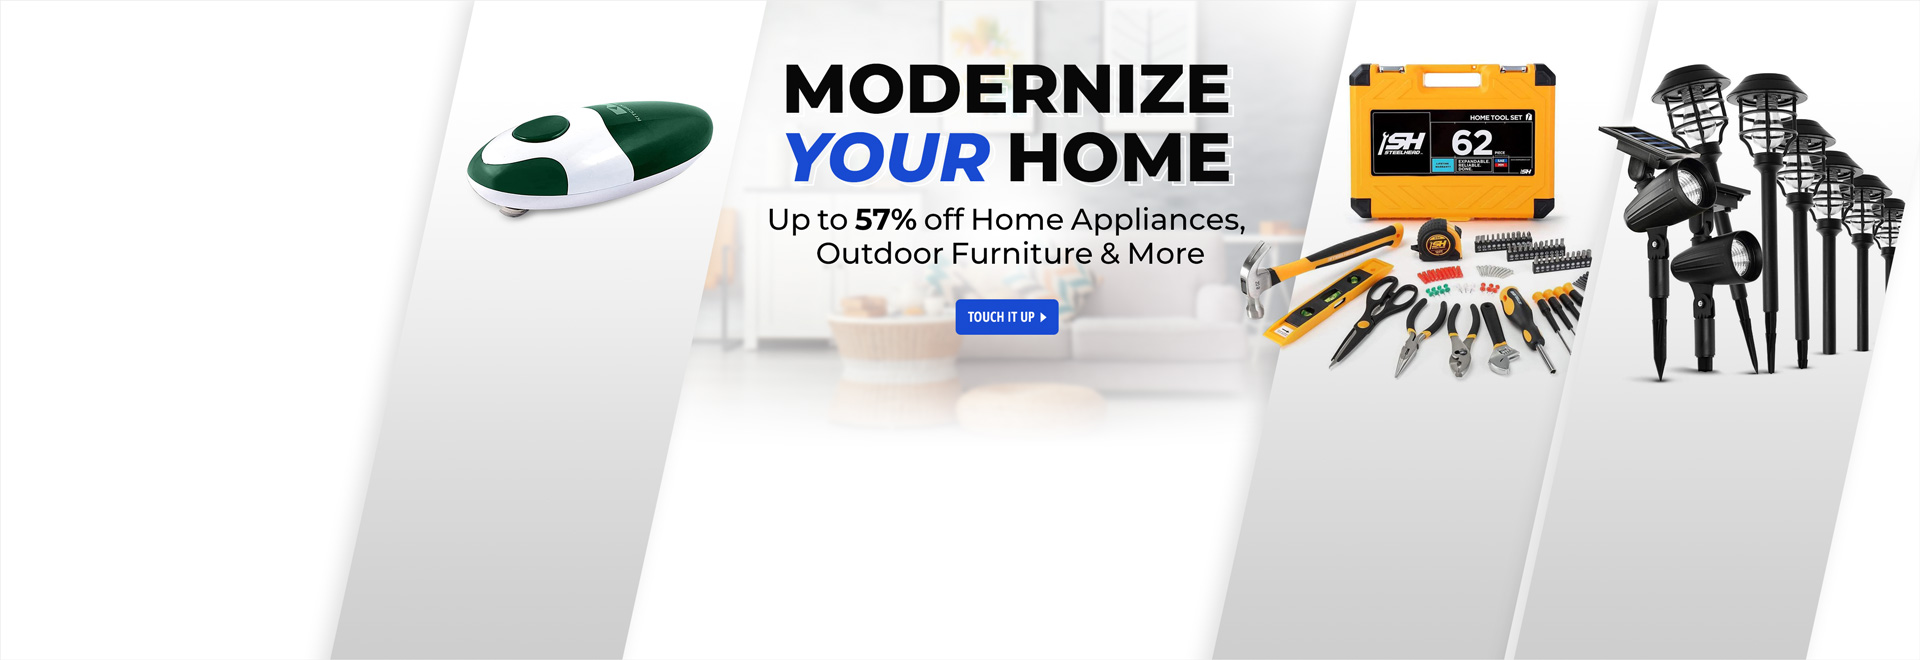 Modernize your home